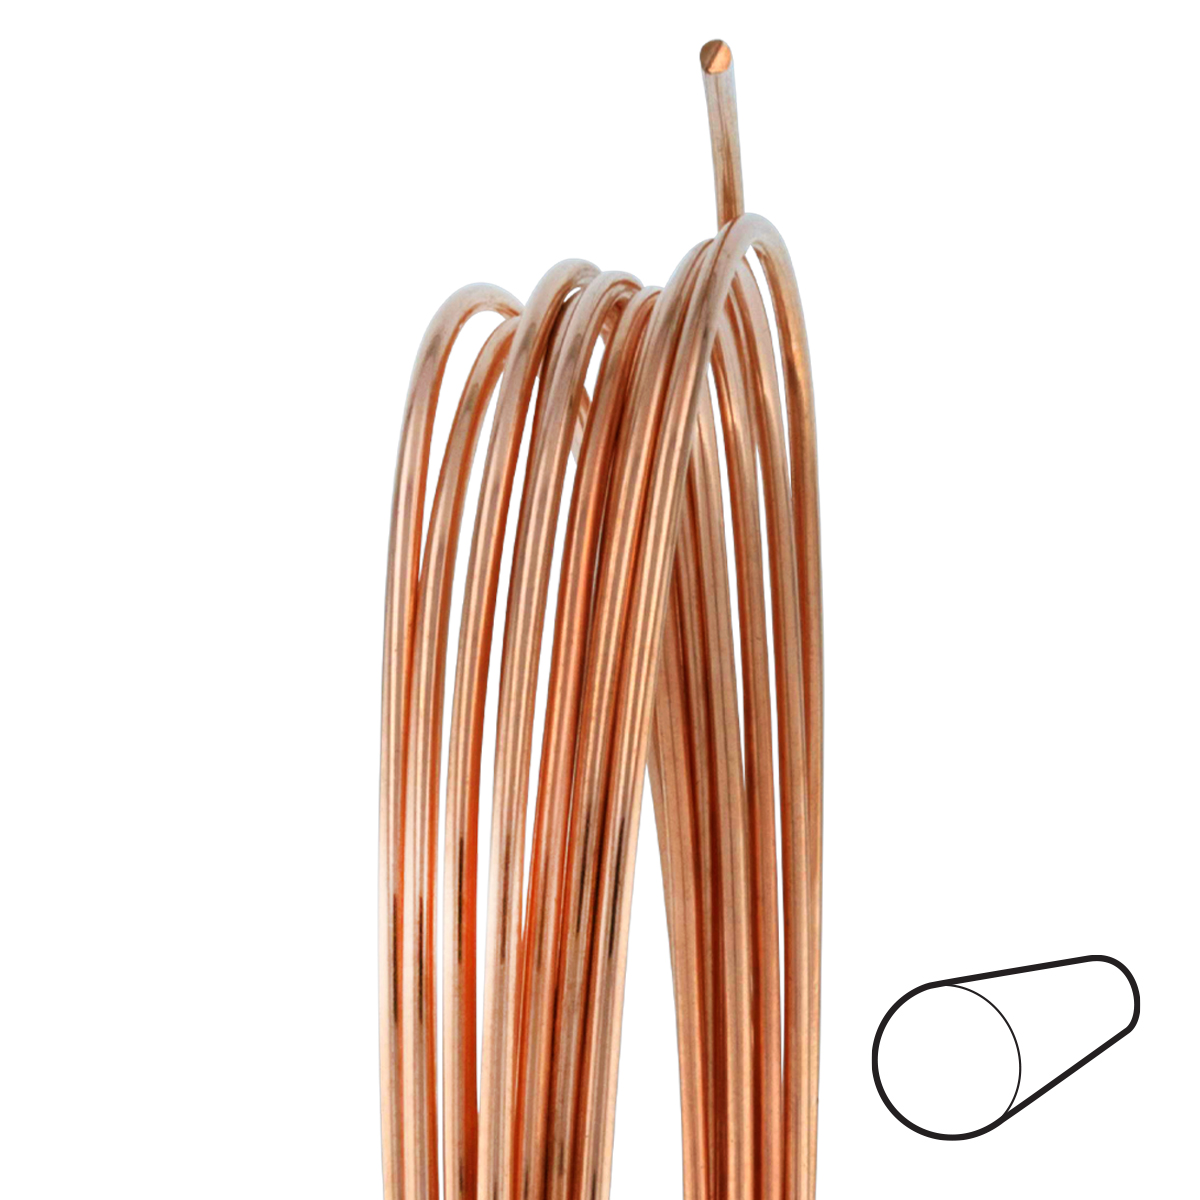 14 Gauge Half Round Half Hard Copper Wire: Wire Jewelry, Wire Wrap  Tutorials